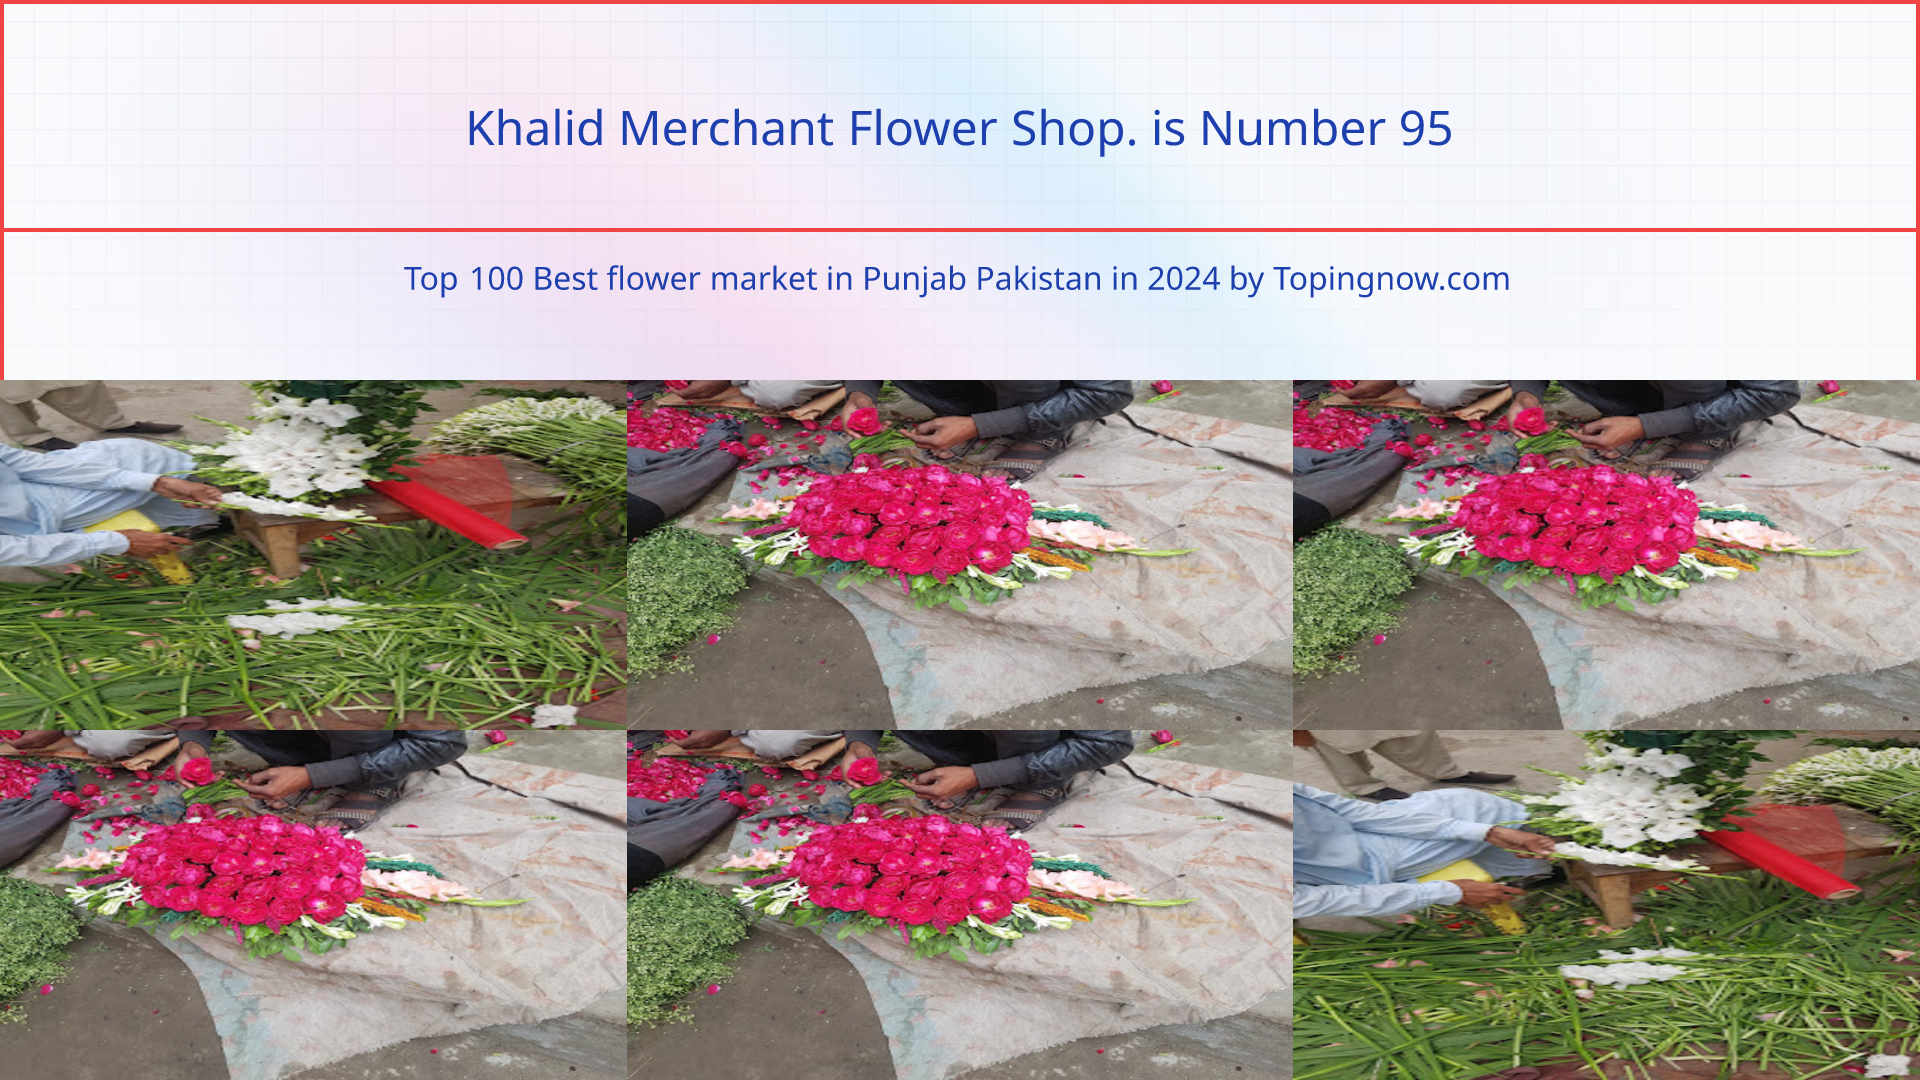 Khalid Merchant Flower Shop.: Top 100 Best flower market in Punjab Pakistan in 2024